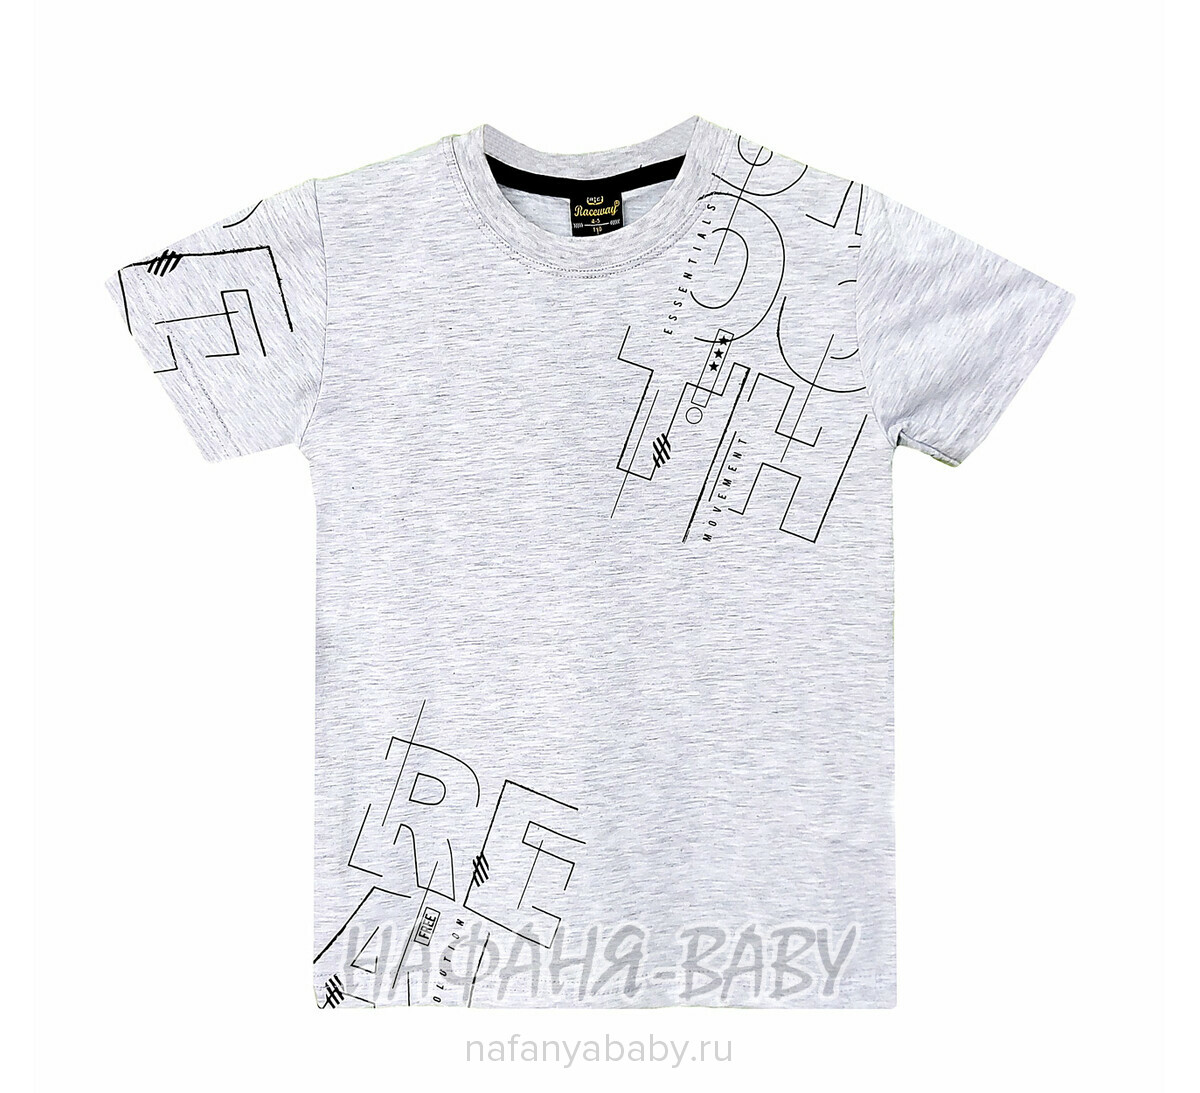 Детская футболка RCW арт. 5824, 5-8 лет, цвет серый меланж, оптом Турция